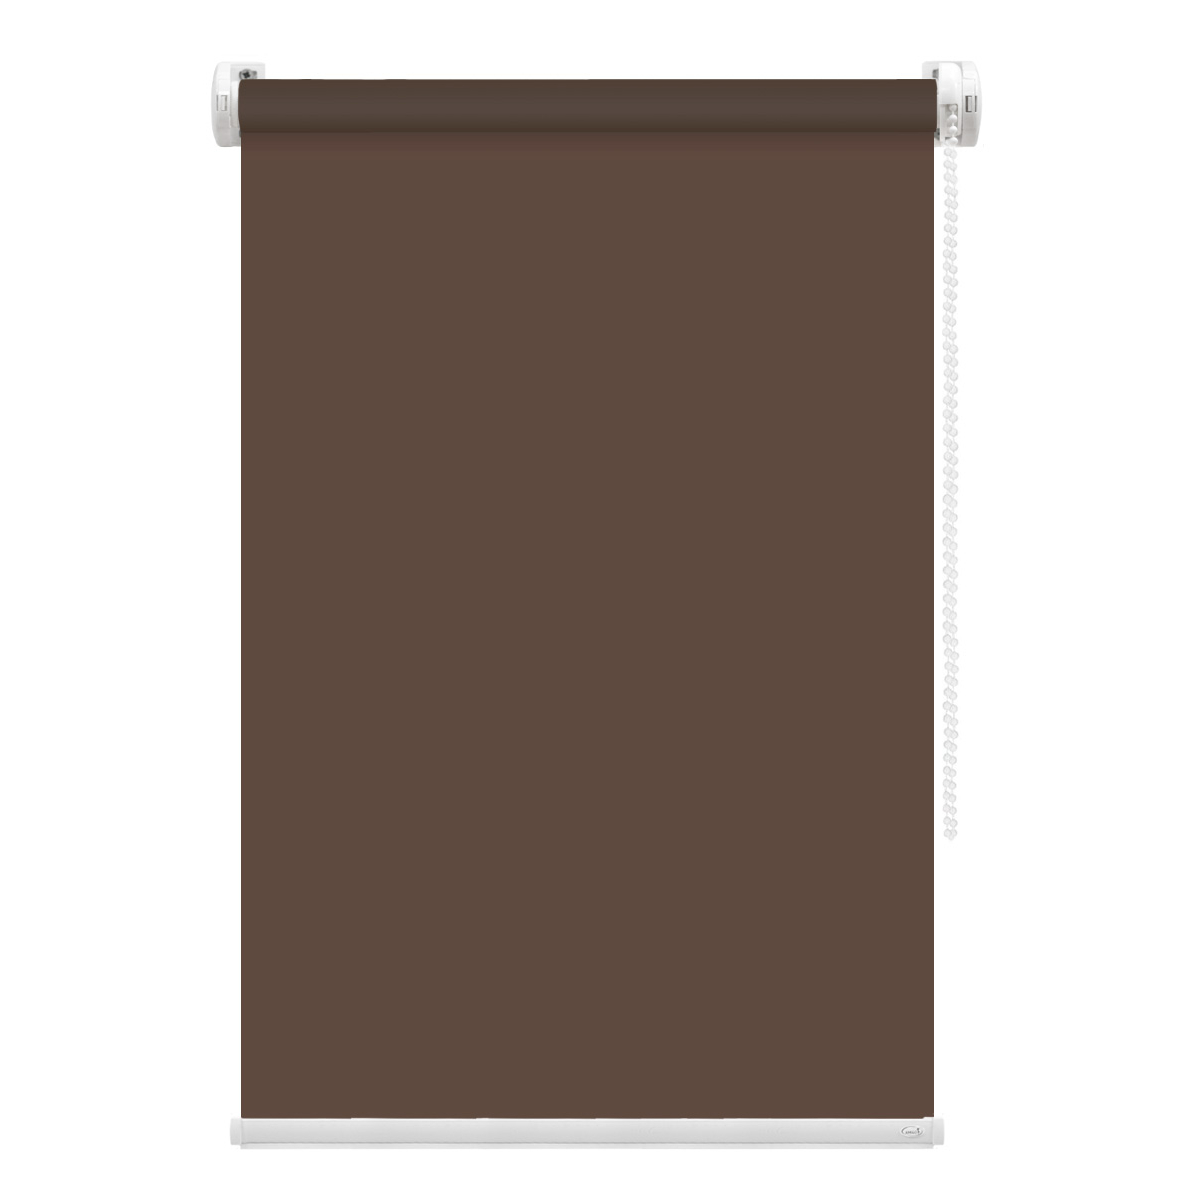 Рулонная штора FixLine Amigo Basic коричневая 50х160 см рулонная штора fixline amigo basic коричневая 50х160 см